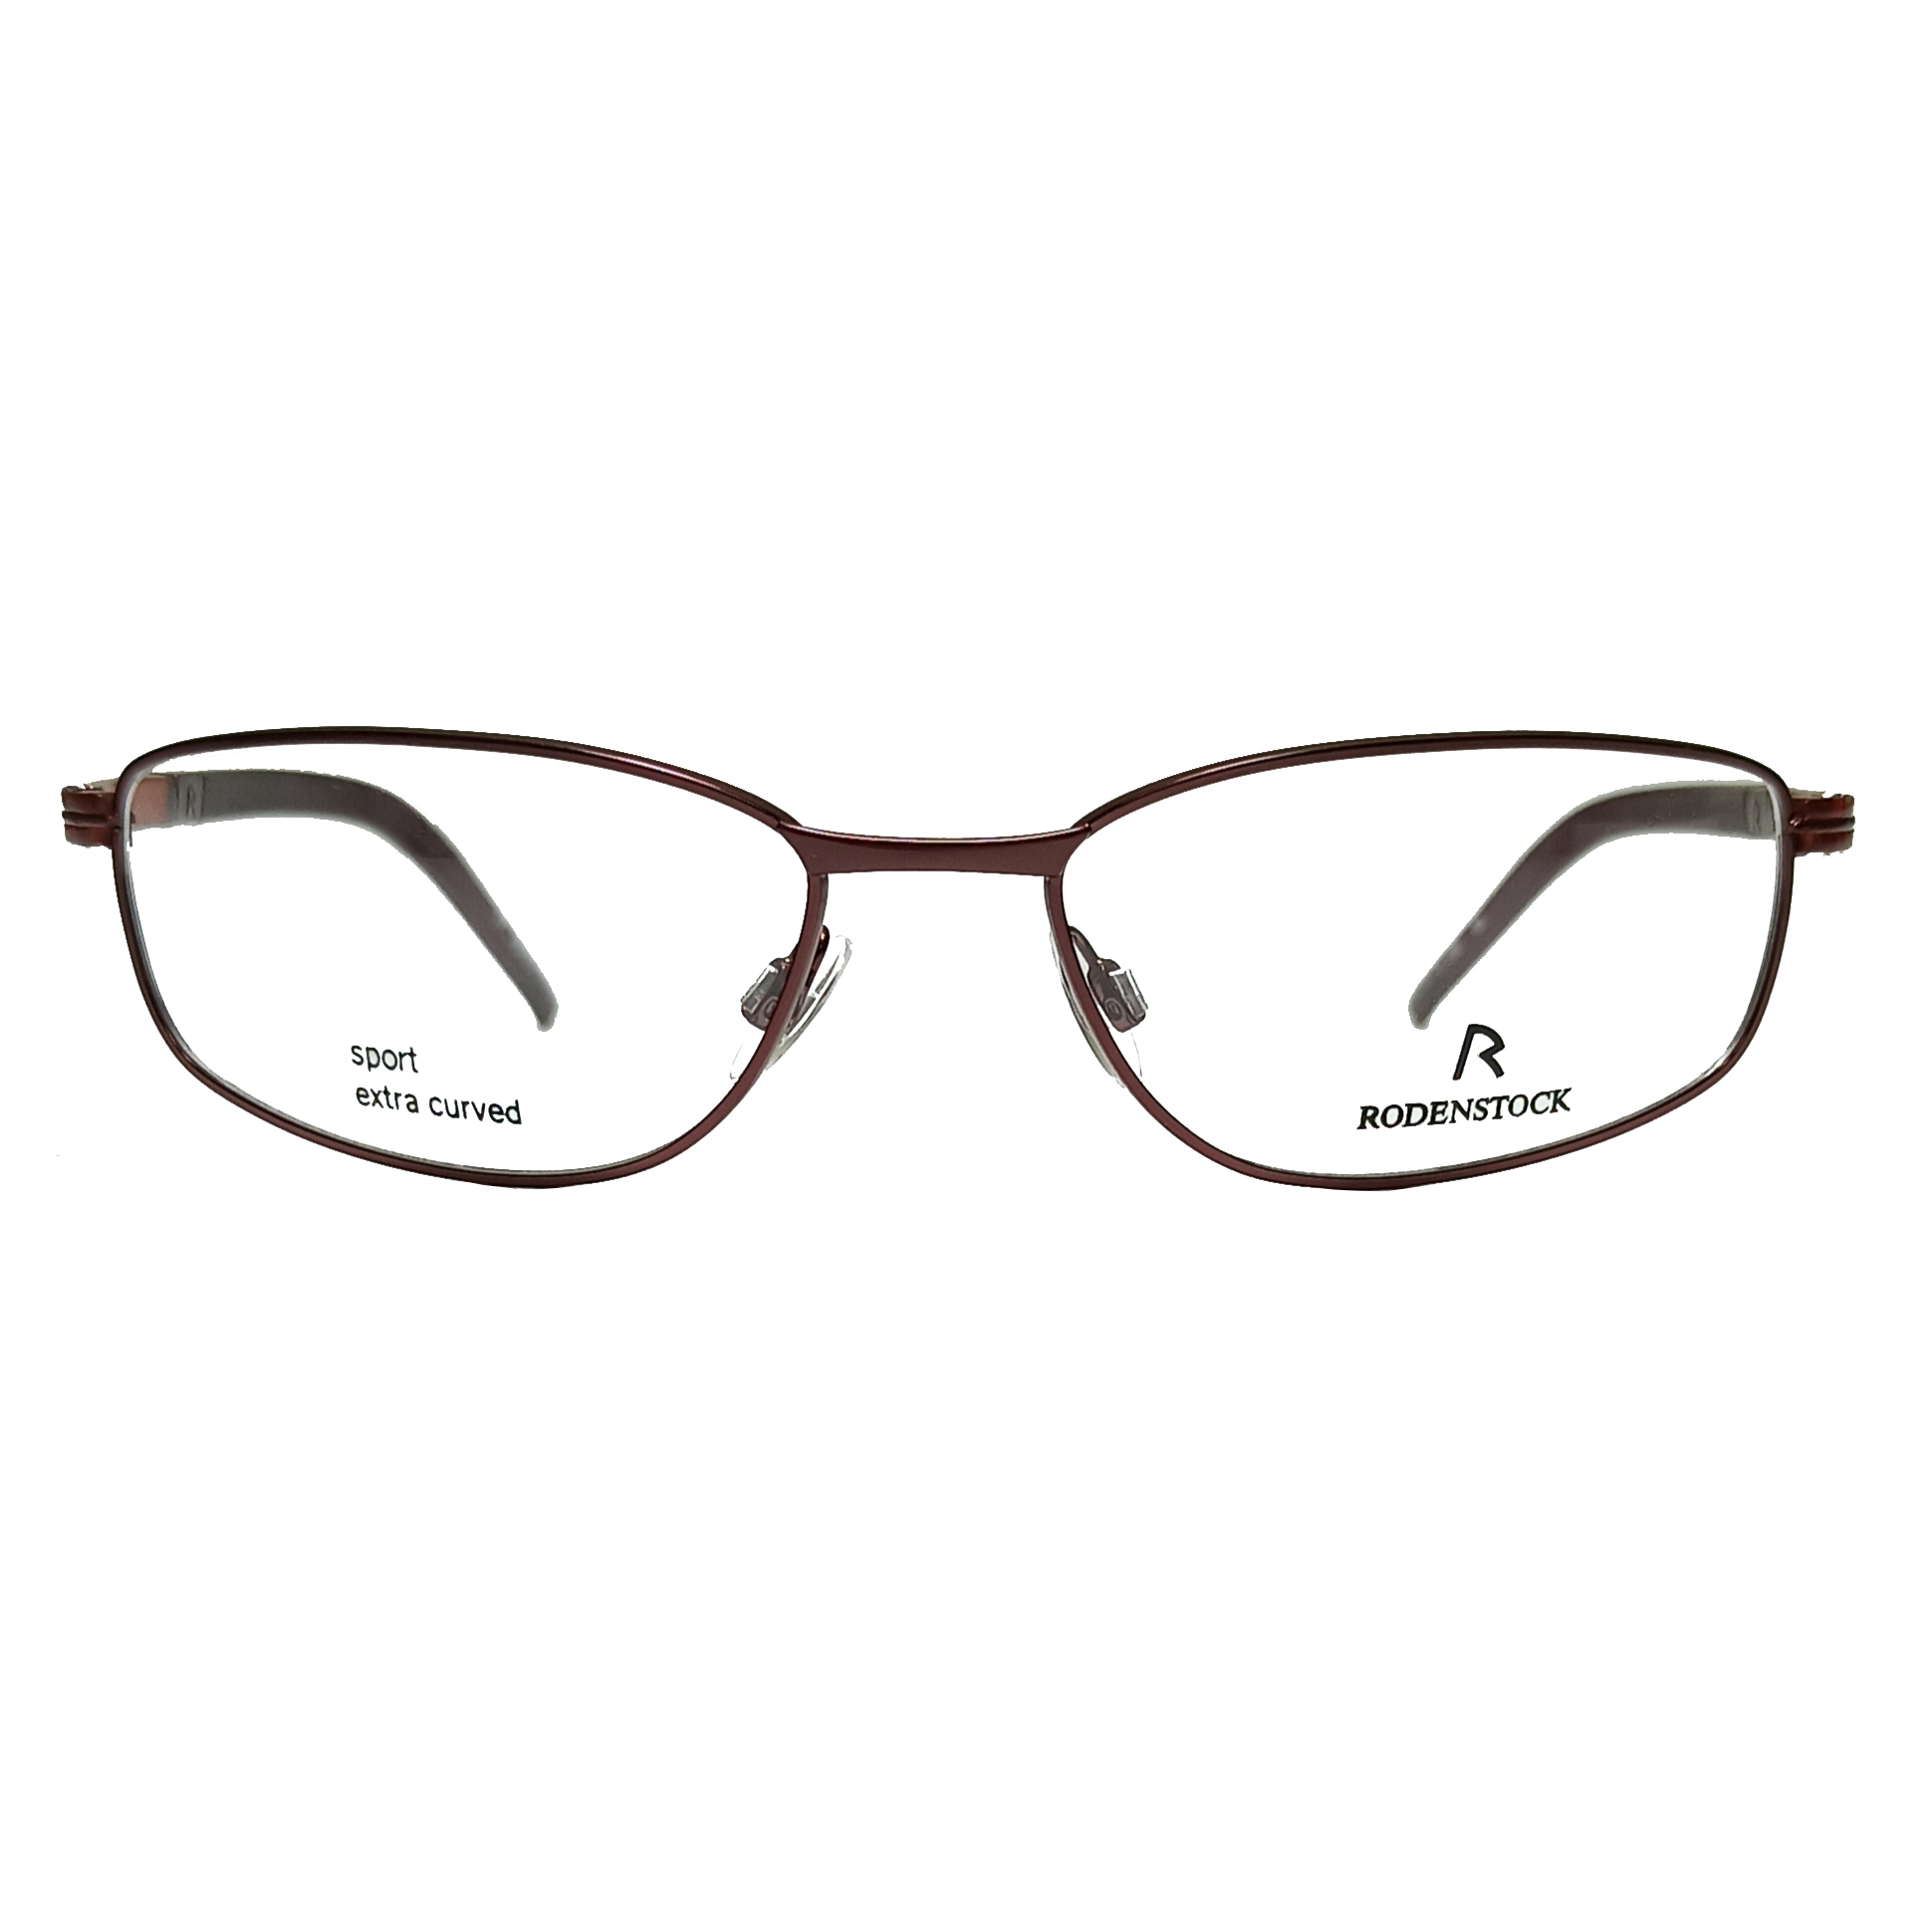 فریم عینک طبی رودن اشتوک مدل 4737-D